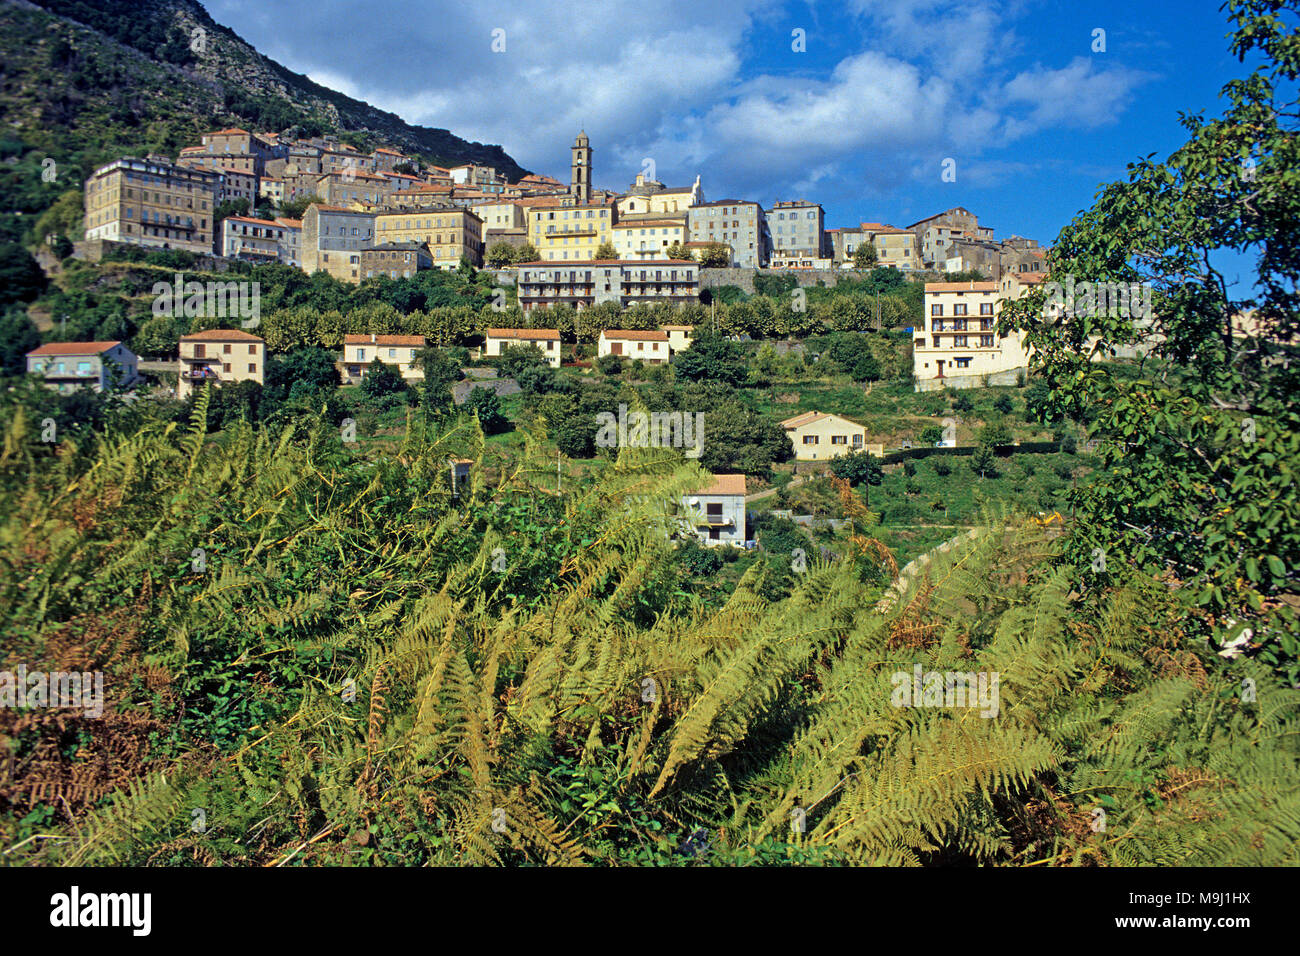 Le village de montagne pittoresque Novale, Corse, France, Europe, mer Méditerranée Banque D'Images